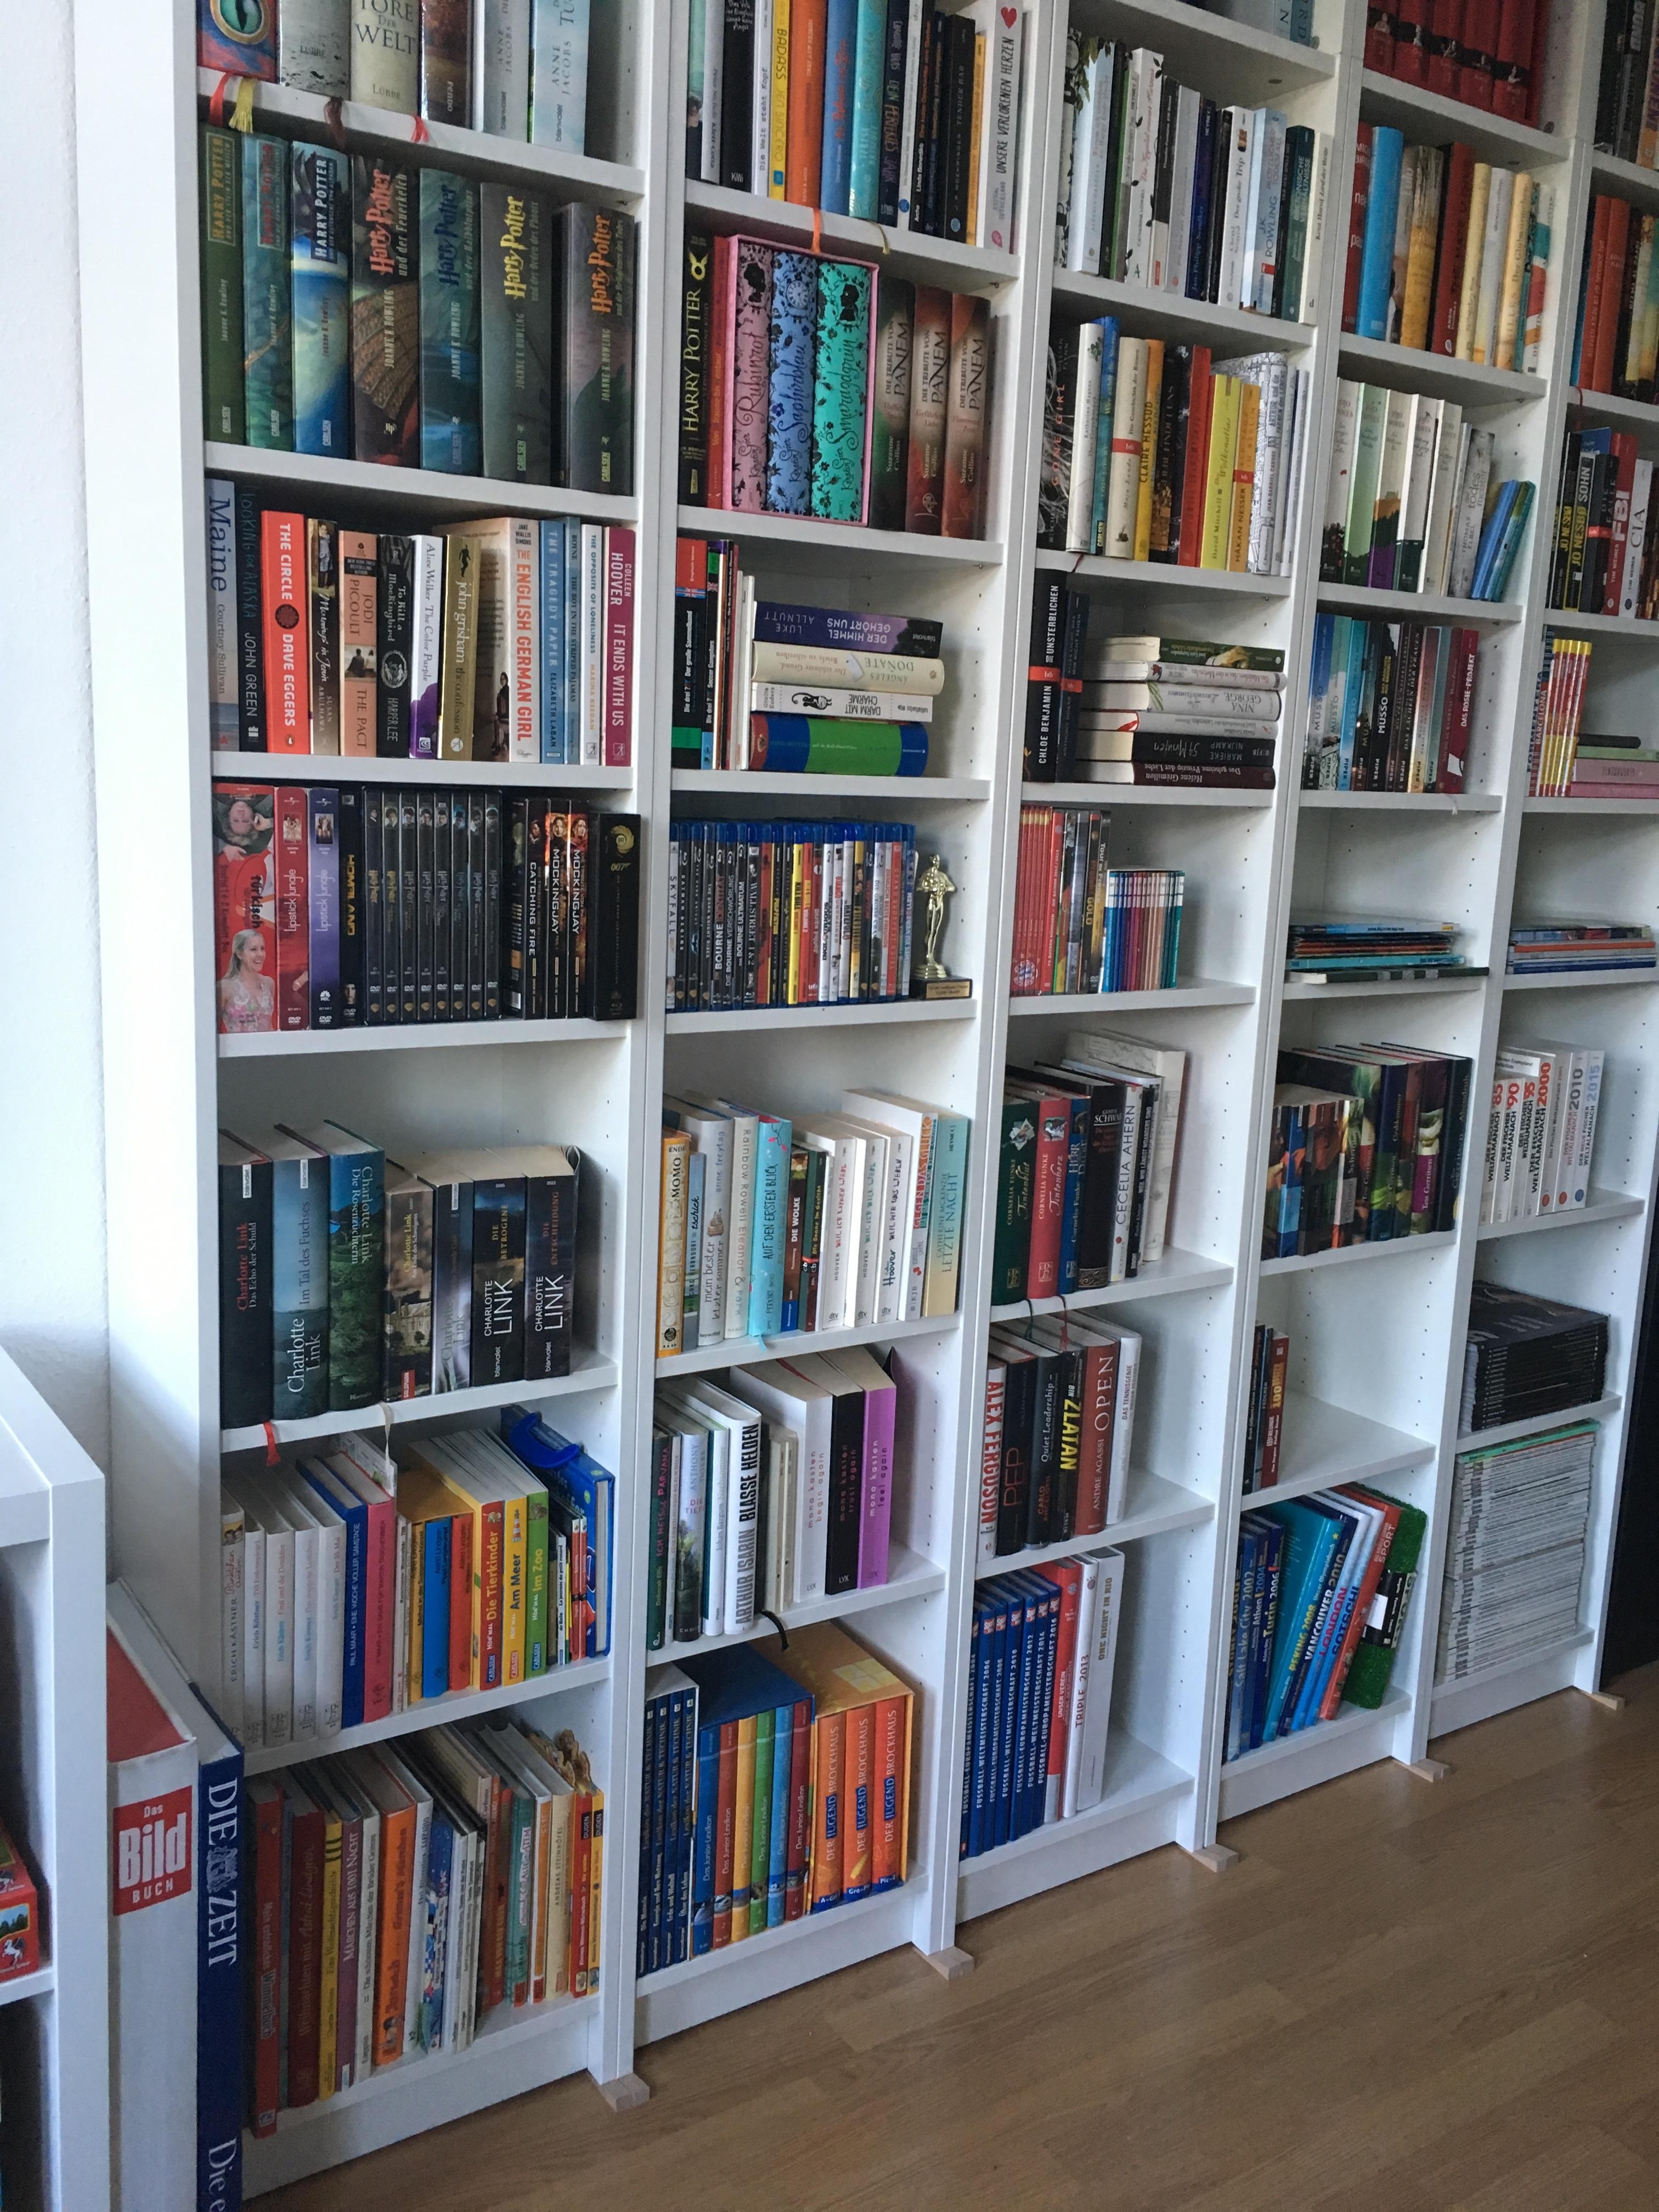 #wohnzimmer #livingchallenge 
Ganz große Bücherliebe bei uns ♥️